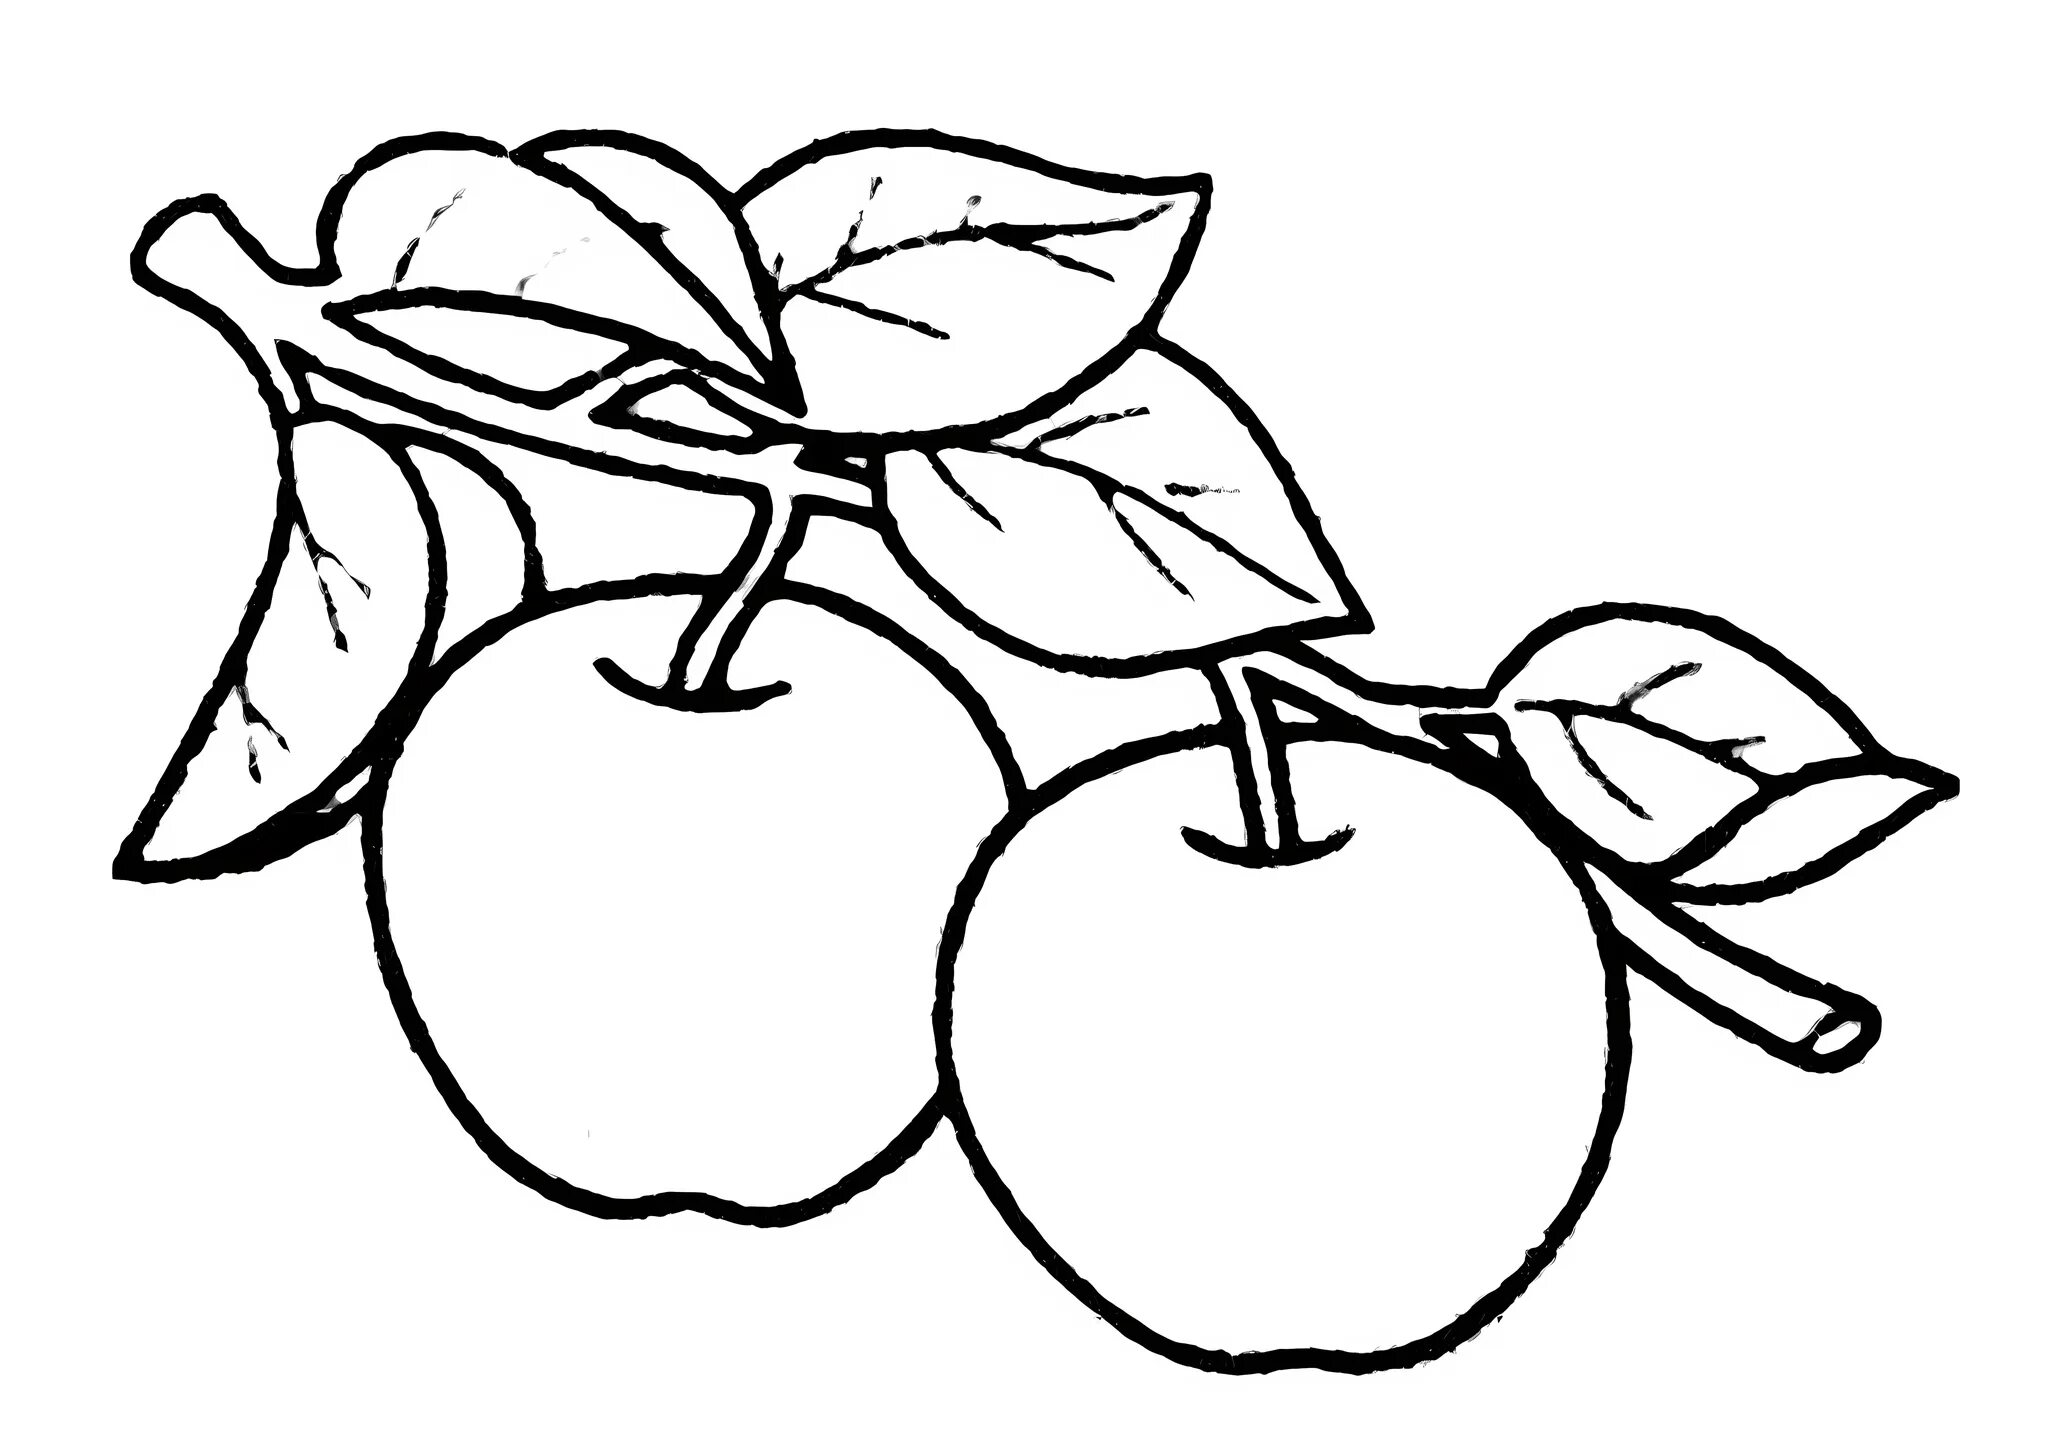 Раскраска 3 яблока. Яблоко раскраска. Яблоко раскраска для детей. Яблочко раскраска для детей. Яблоко рисунок для детей.